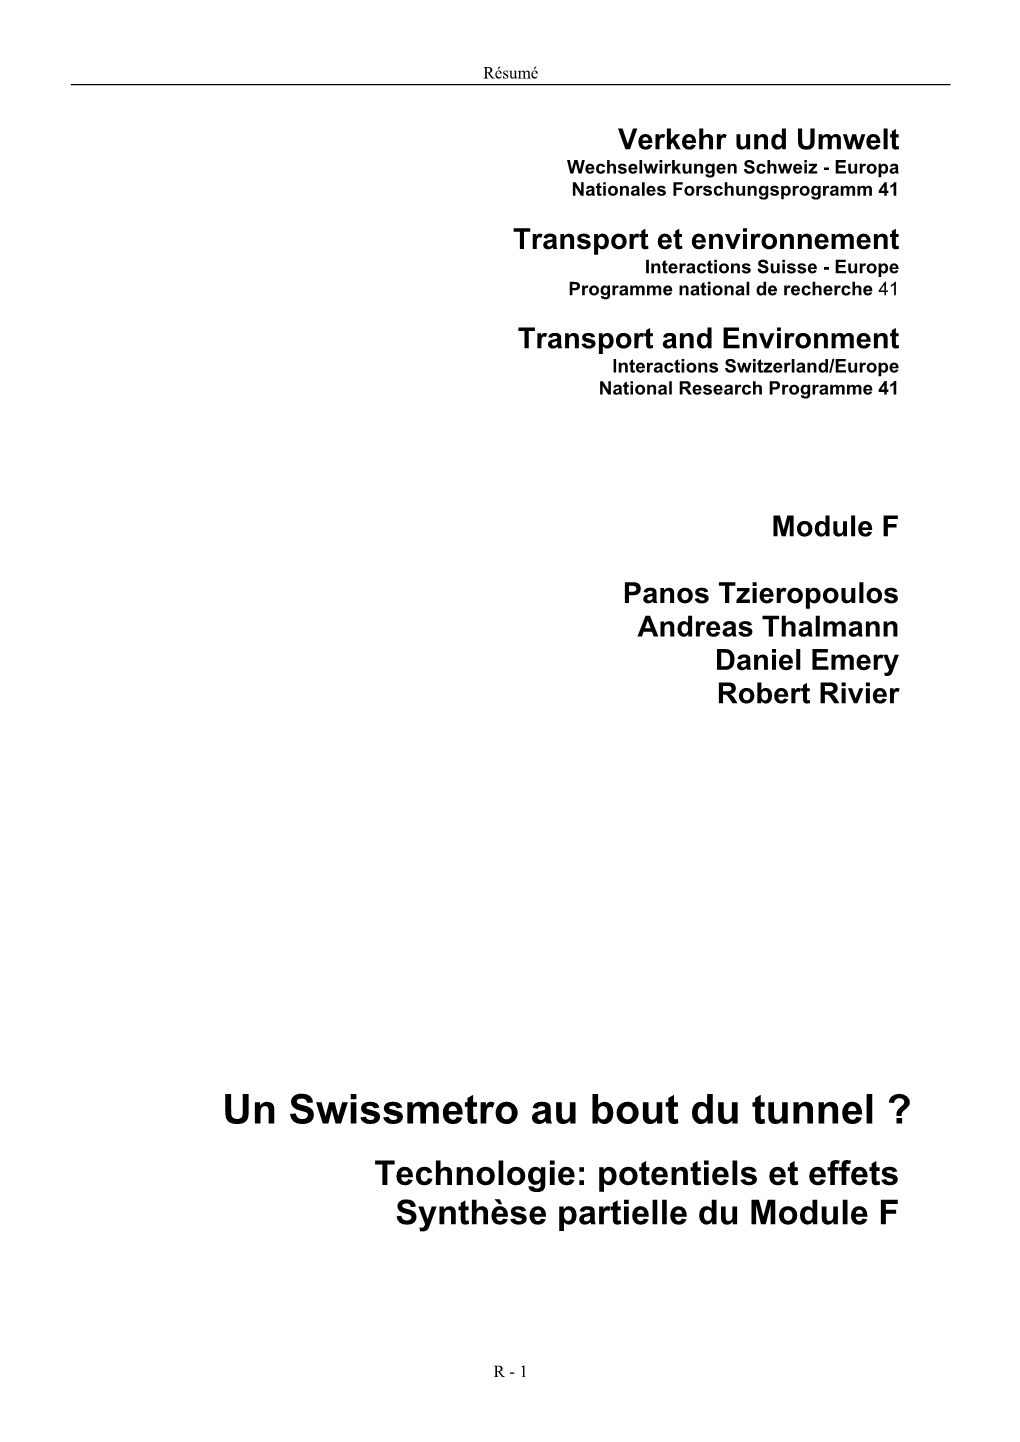 Un Swissmetro Au Bout Du Tunnel ? Technologie: Potentiels Et Effets Synthèse Partielle Du Module F